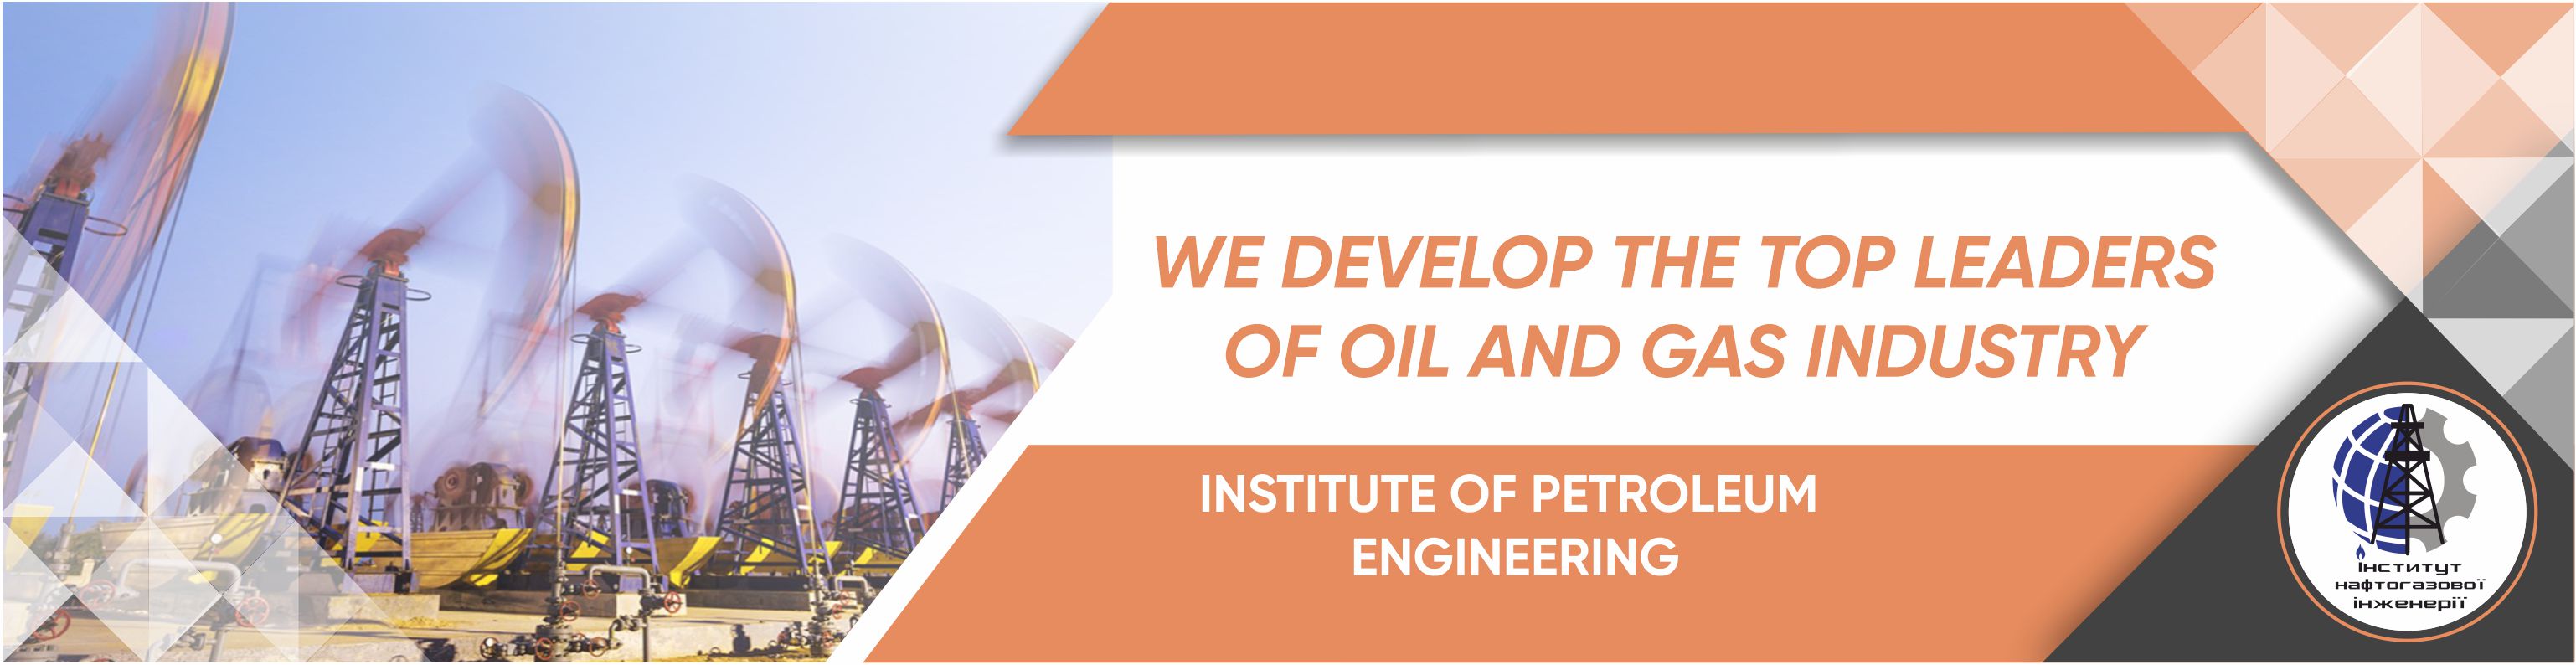 Institute of Petroleum Engineering